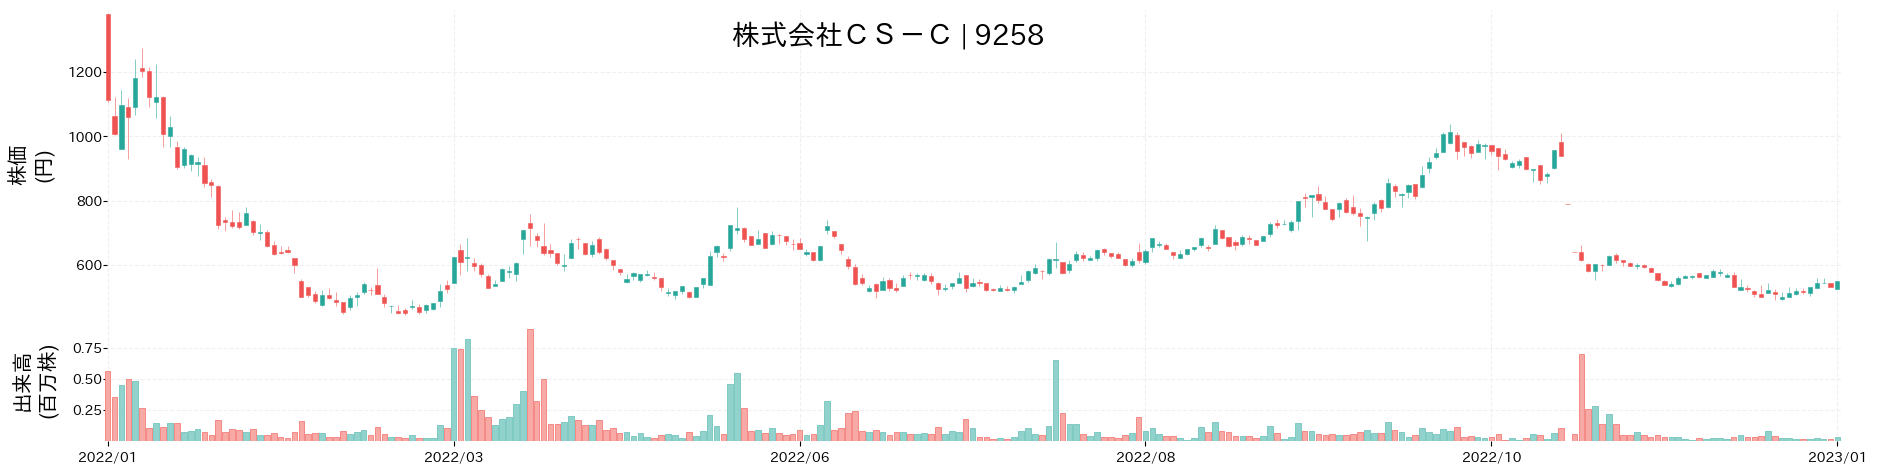 CS-Cの株価推移(2022)